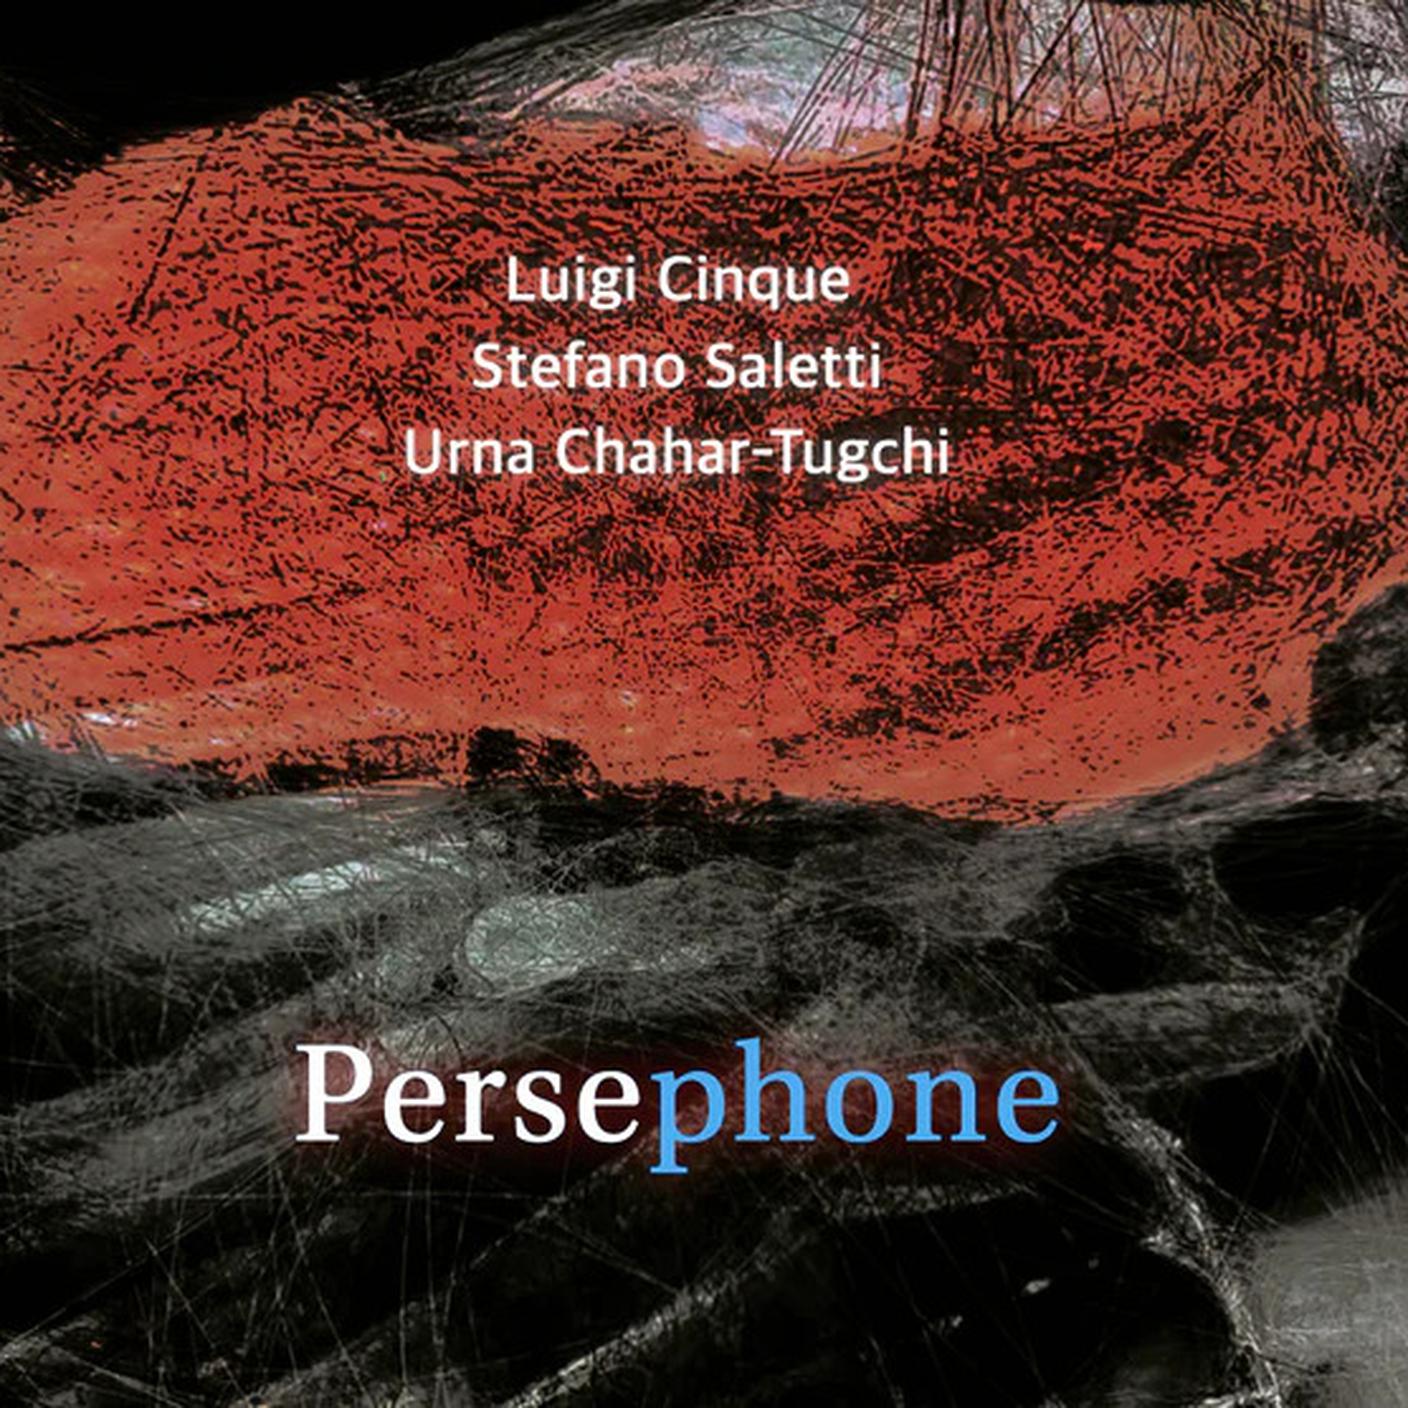 "Persephone" di Luigi Cinque, Stefano Saletti e Urna Chahar-Tugchi, Materiali Sonori (dettaglio di copertina)